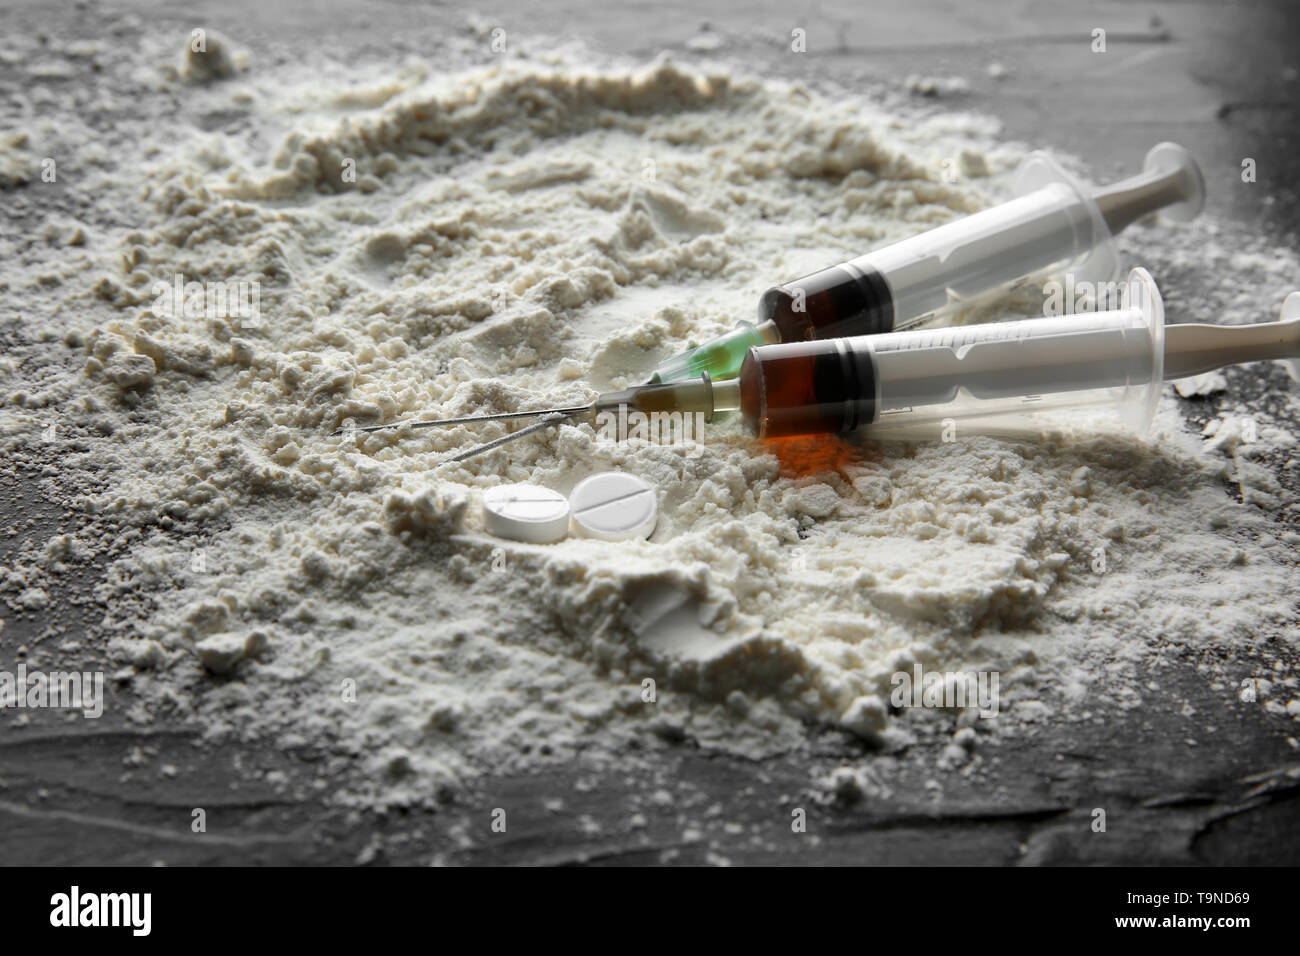 La cocaïne avec des seringues en tableau noir. Concept de toxicomanie Banque D'Images